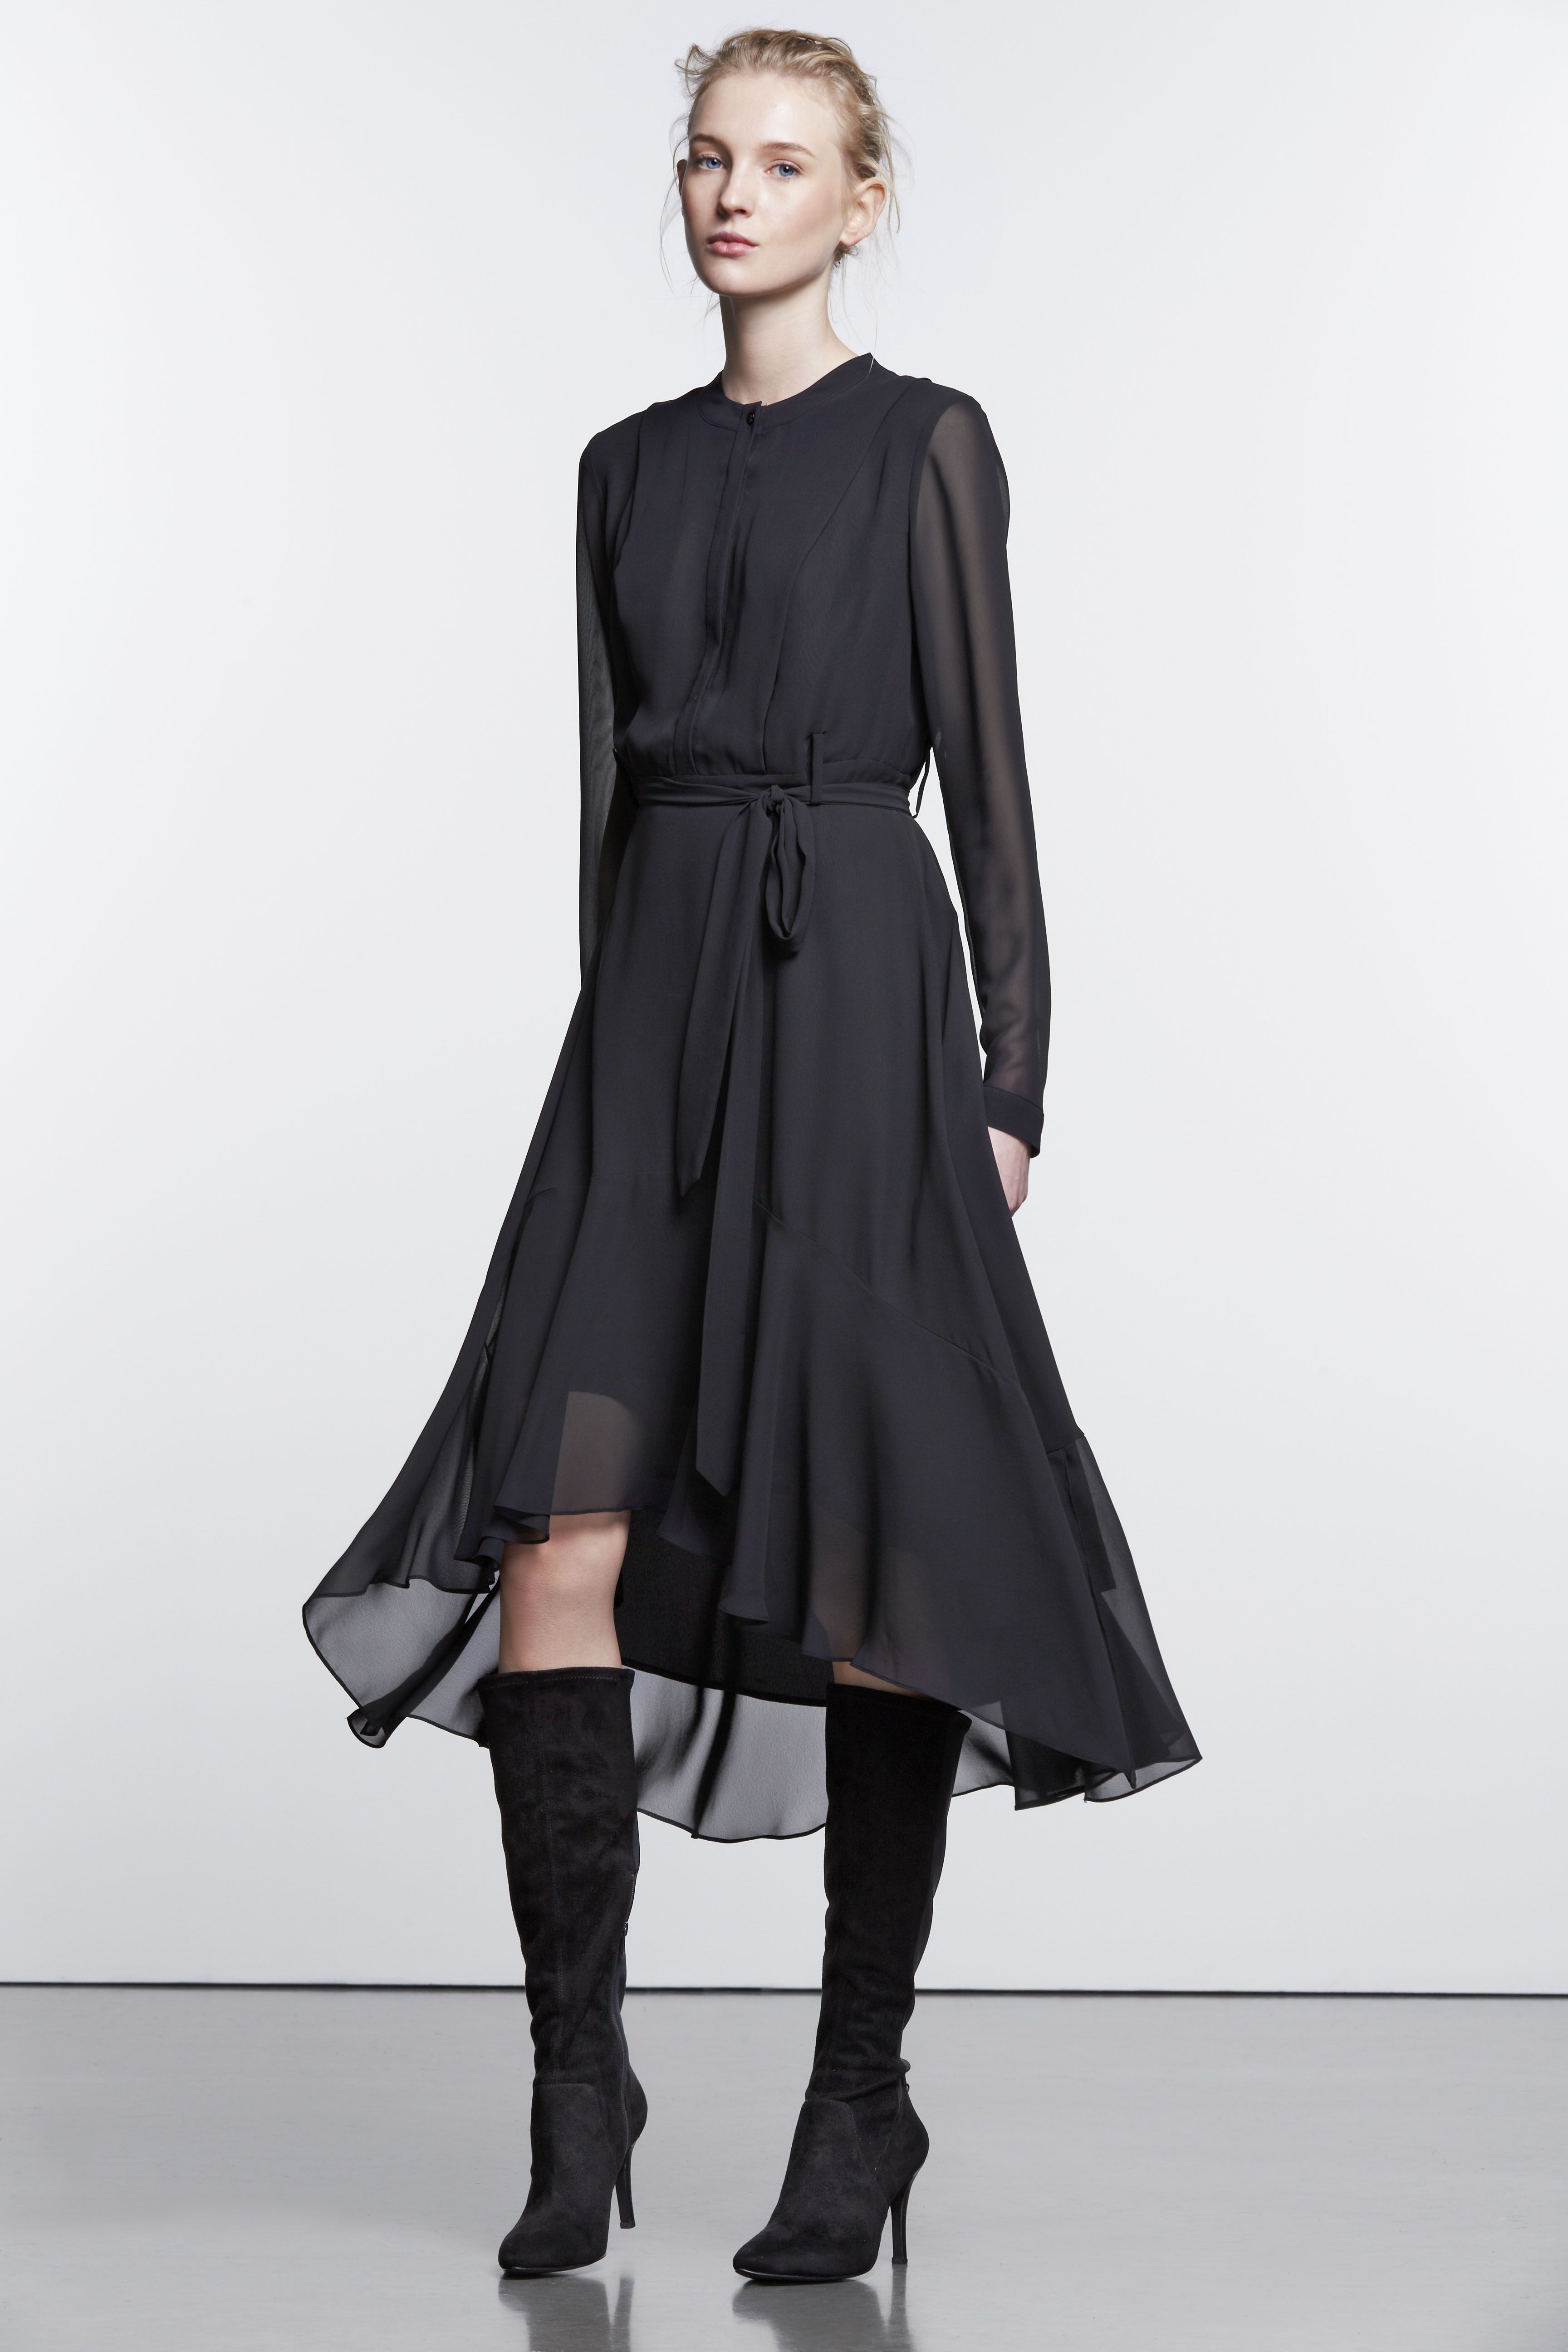 Simply Vera Vera Wang Black Dresses